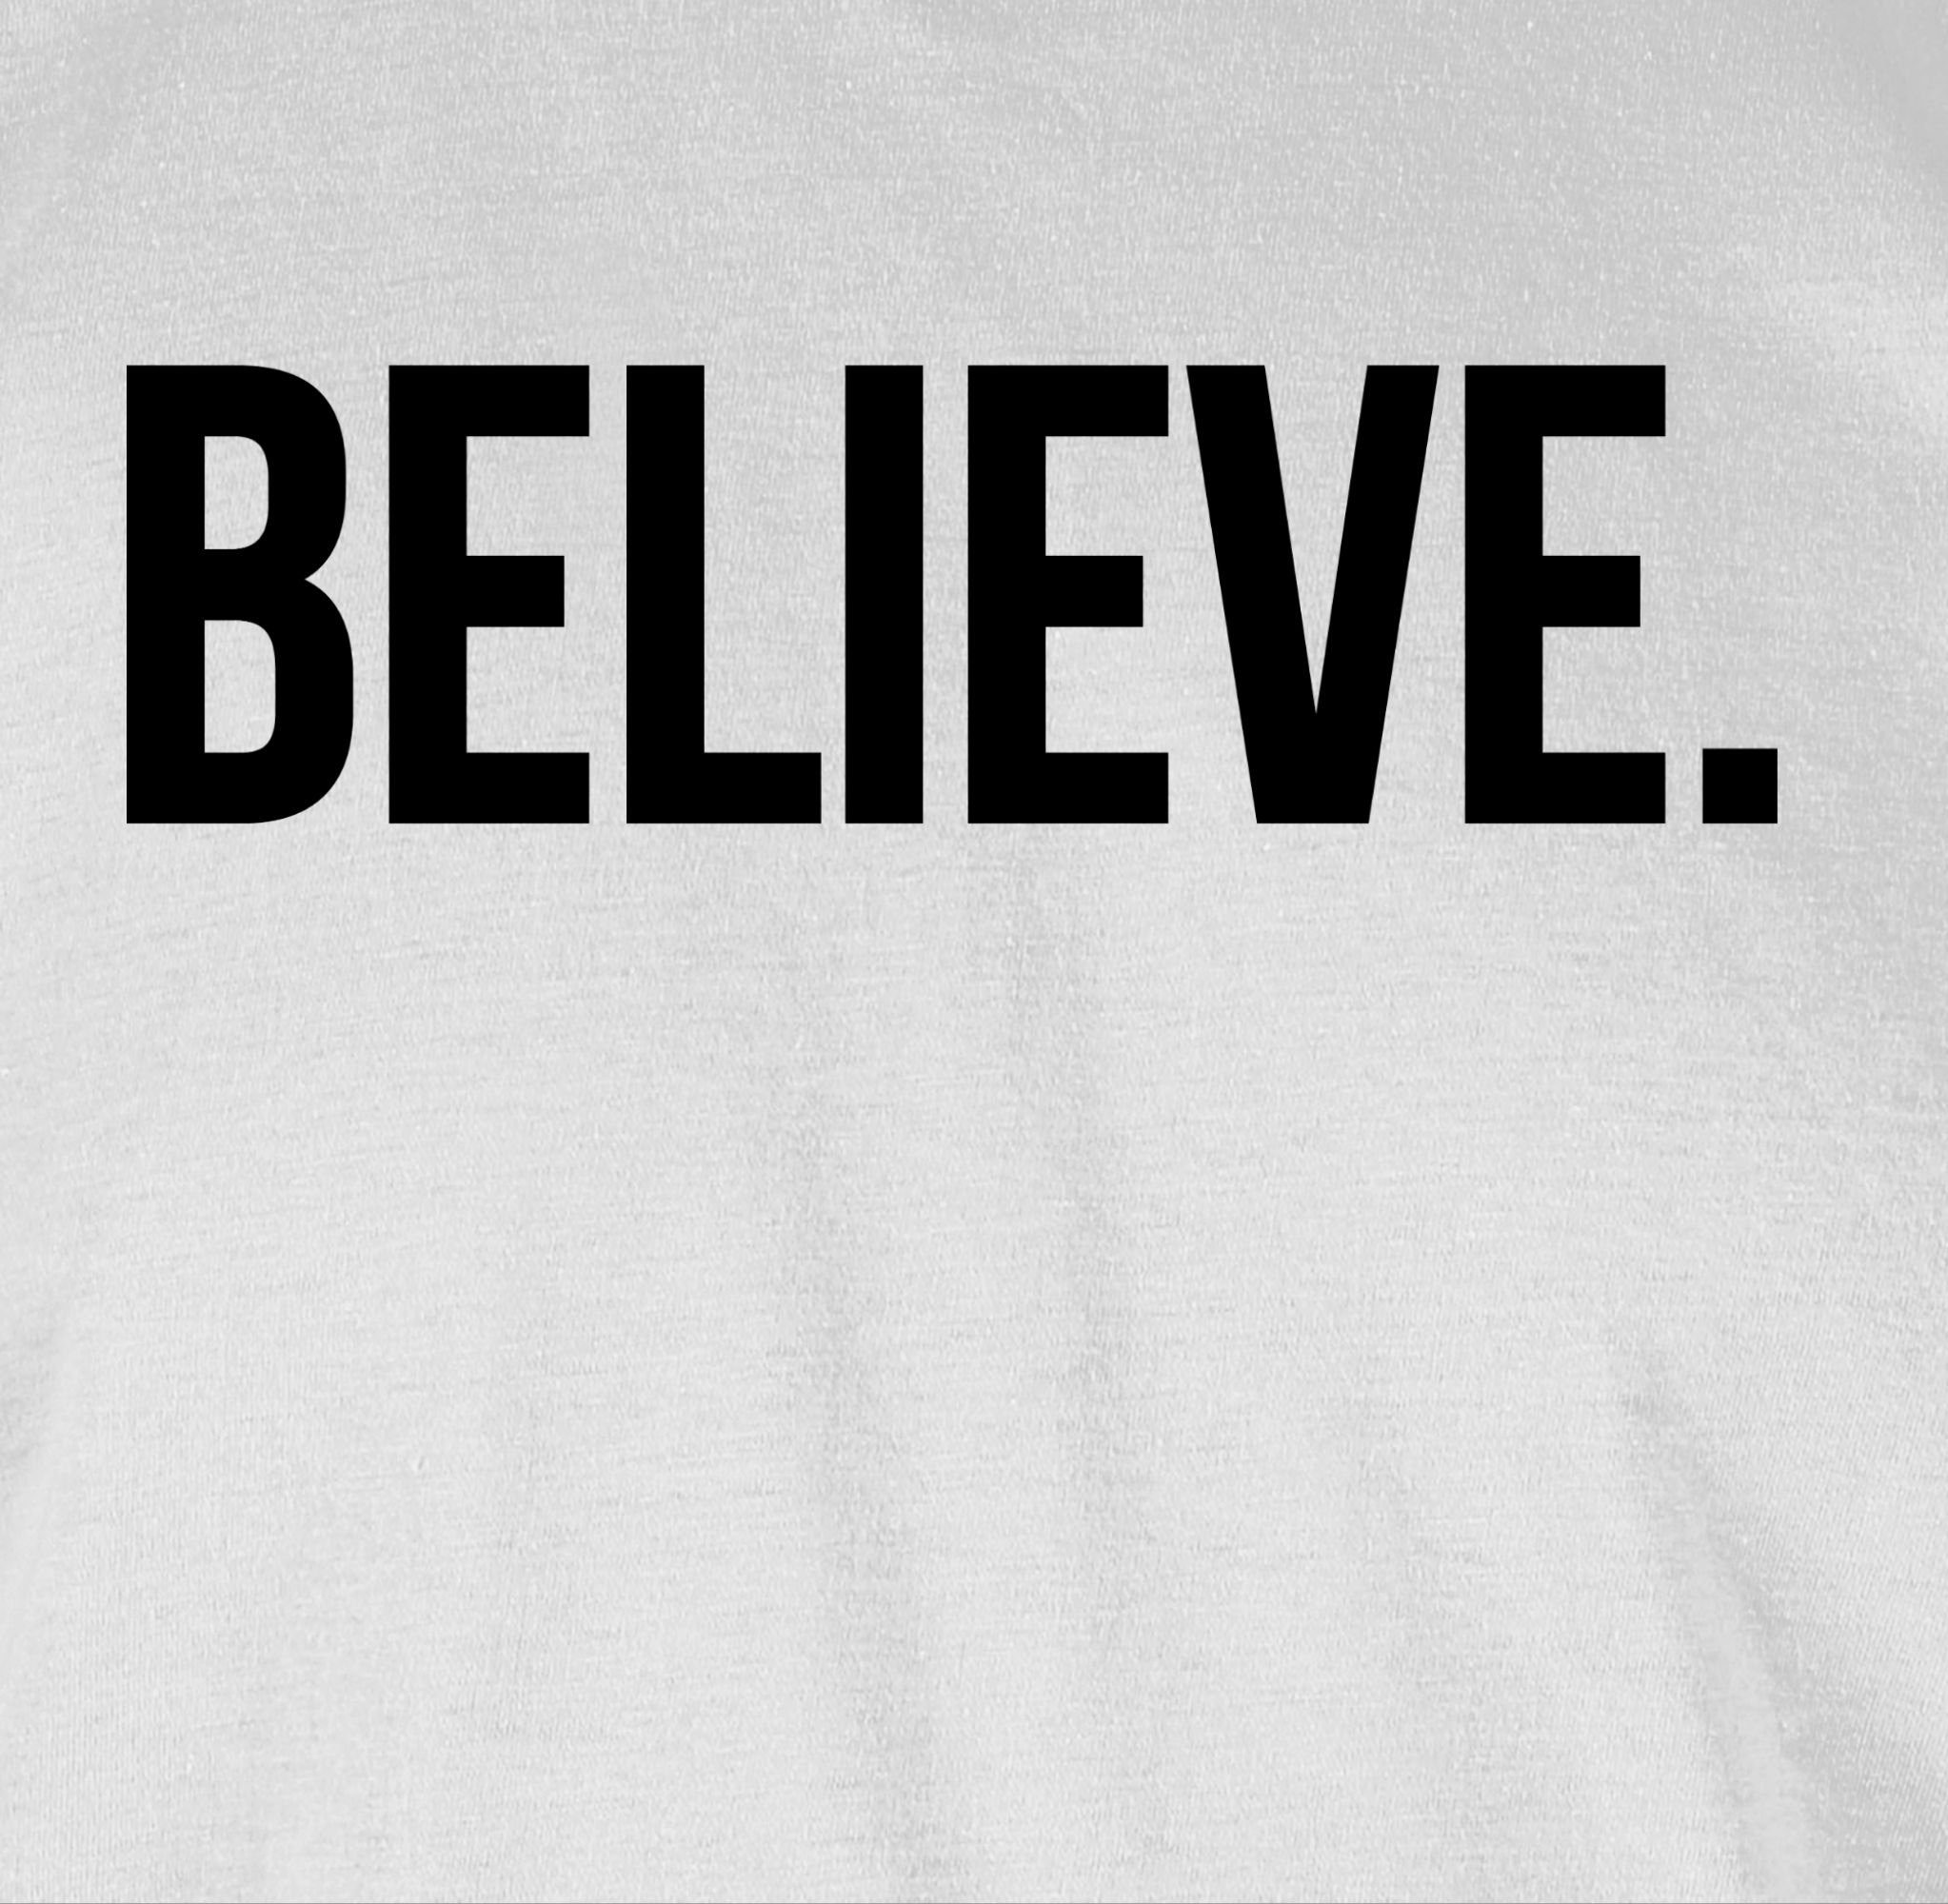 Shirtracer Glaube Believe 1 Glauben T-Shirt Statement Religion Weiß